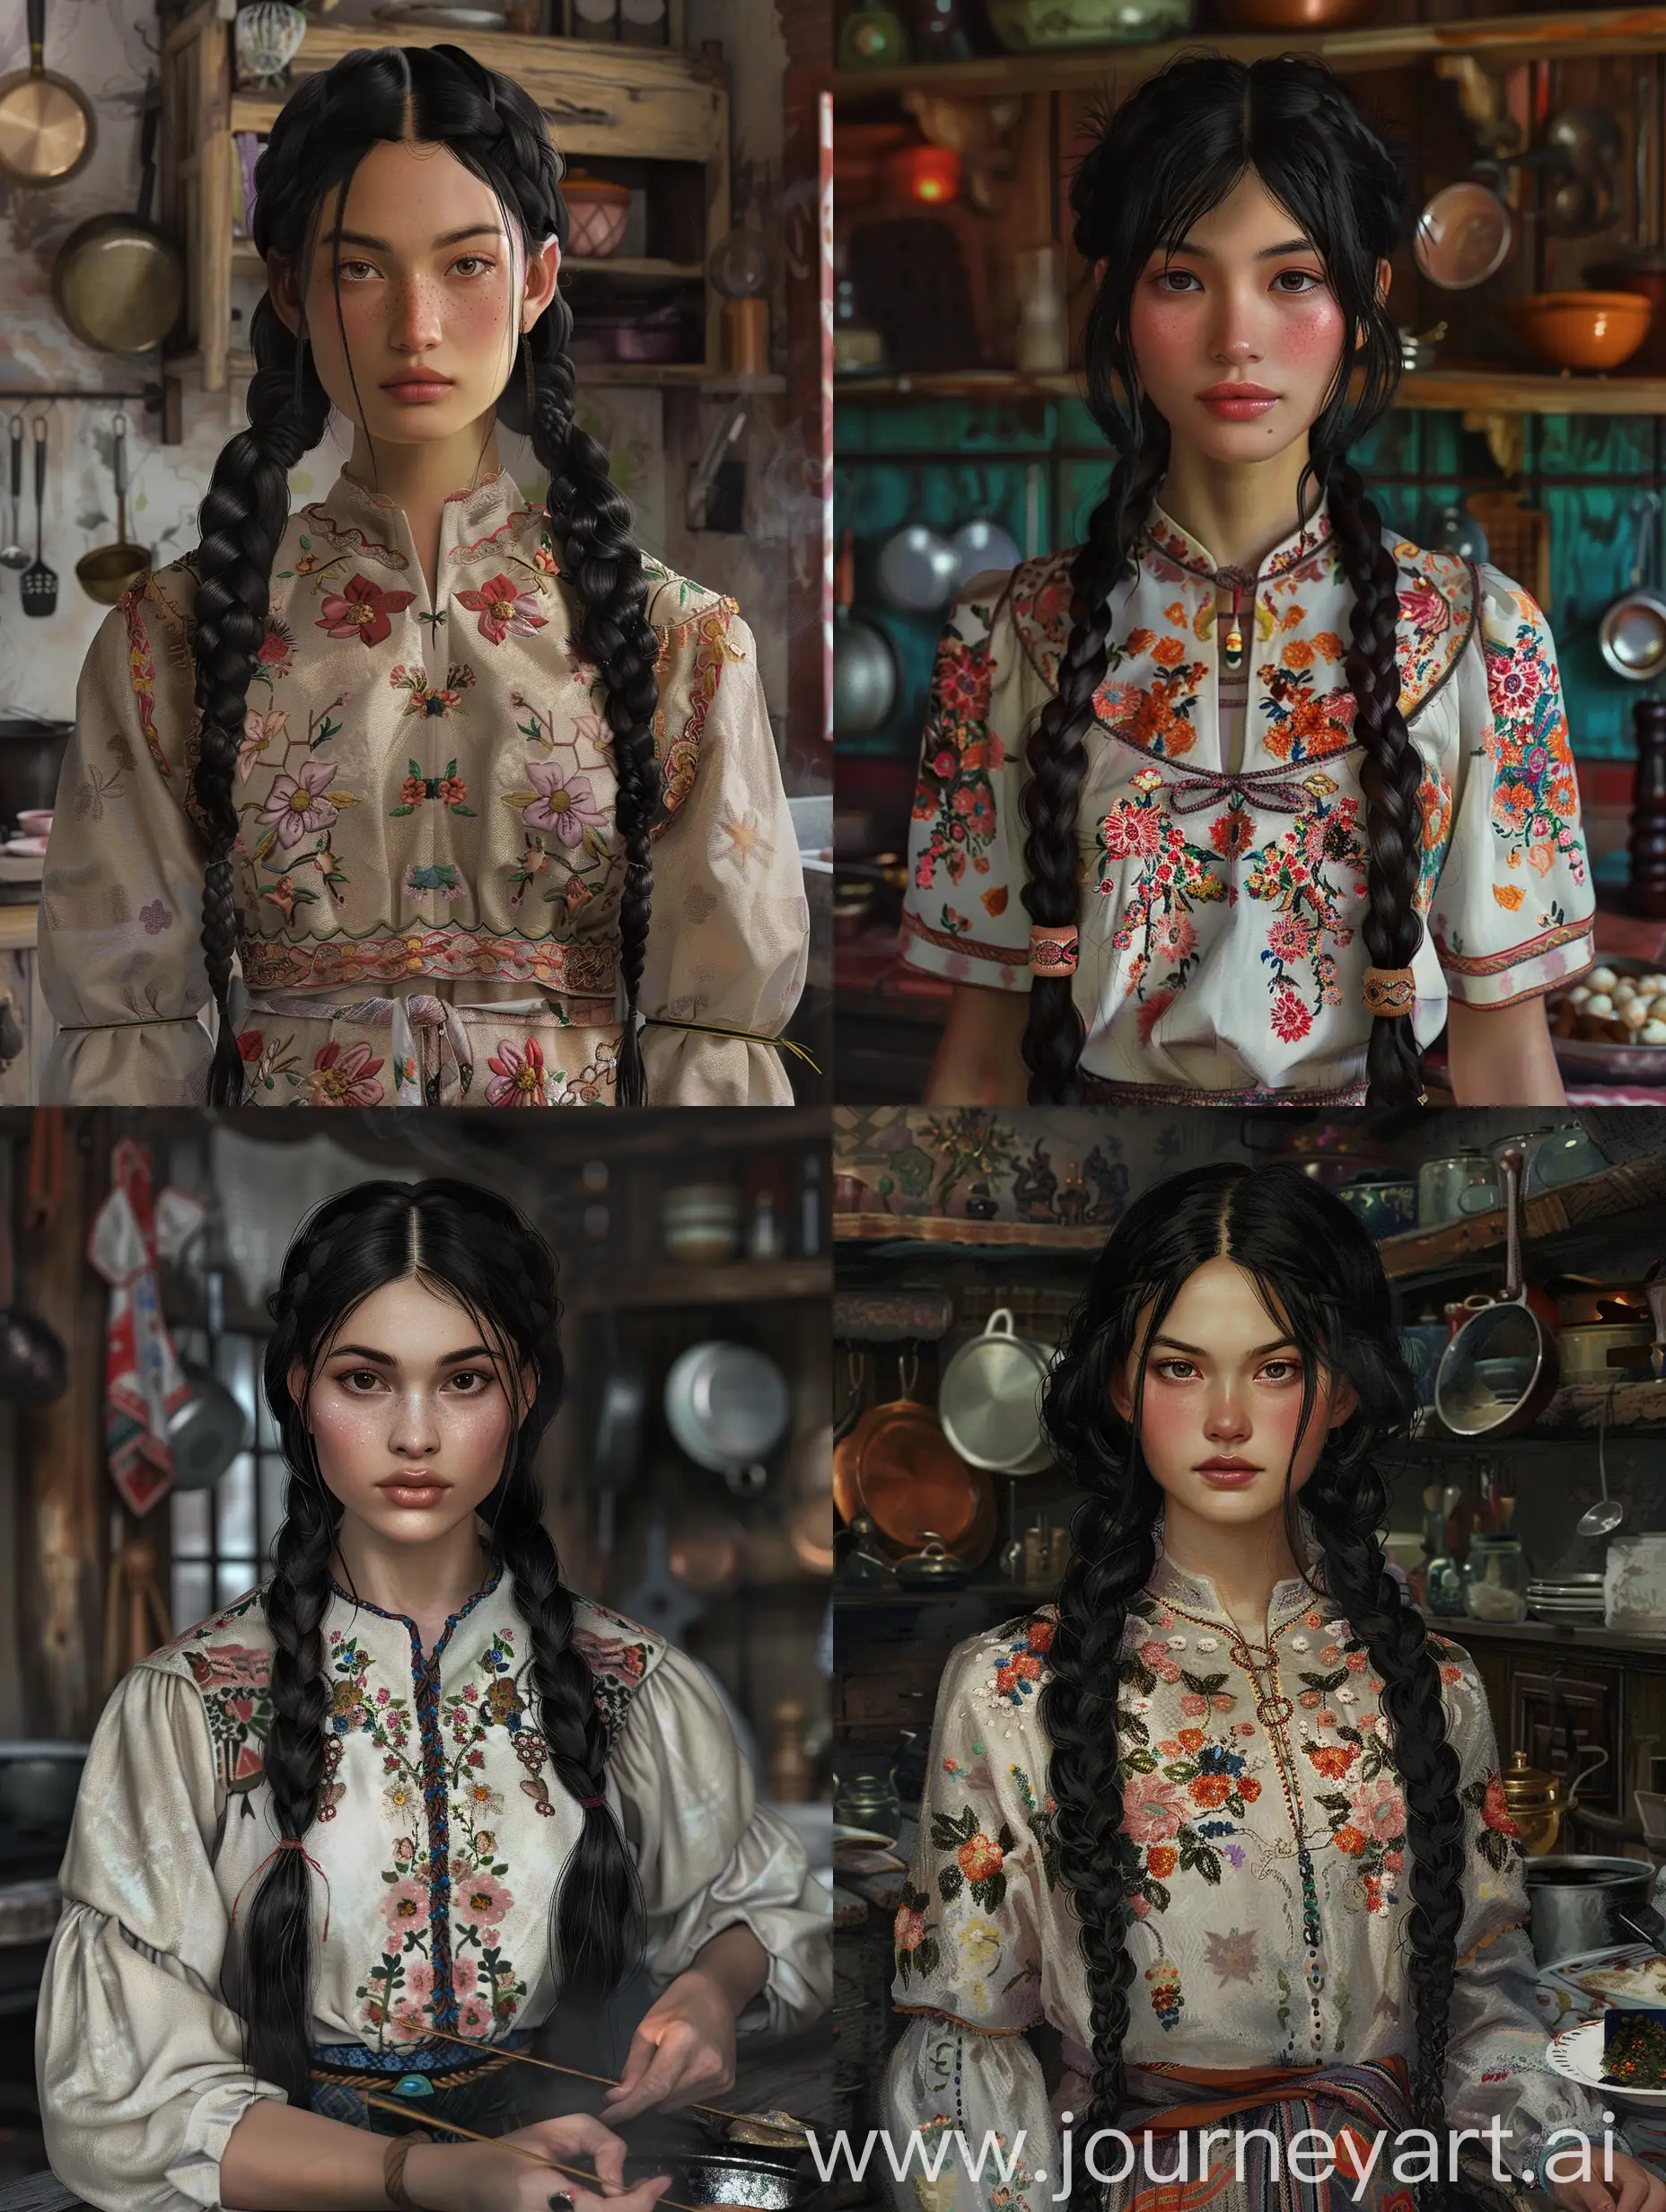 Eine Frau vom Baikalsee. Sie hat langes schwarzes Haar in zwei geflochtenen Zöpfen. Ihre Gesichtszüge sind asiatisch und sie hat etwas dunklere Haut. Sie ist wunderschön. Sie trägt ein traditionell mit Blumen besticktes Kleid. Sie steht in einer Hexenküche und kocht etwas.